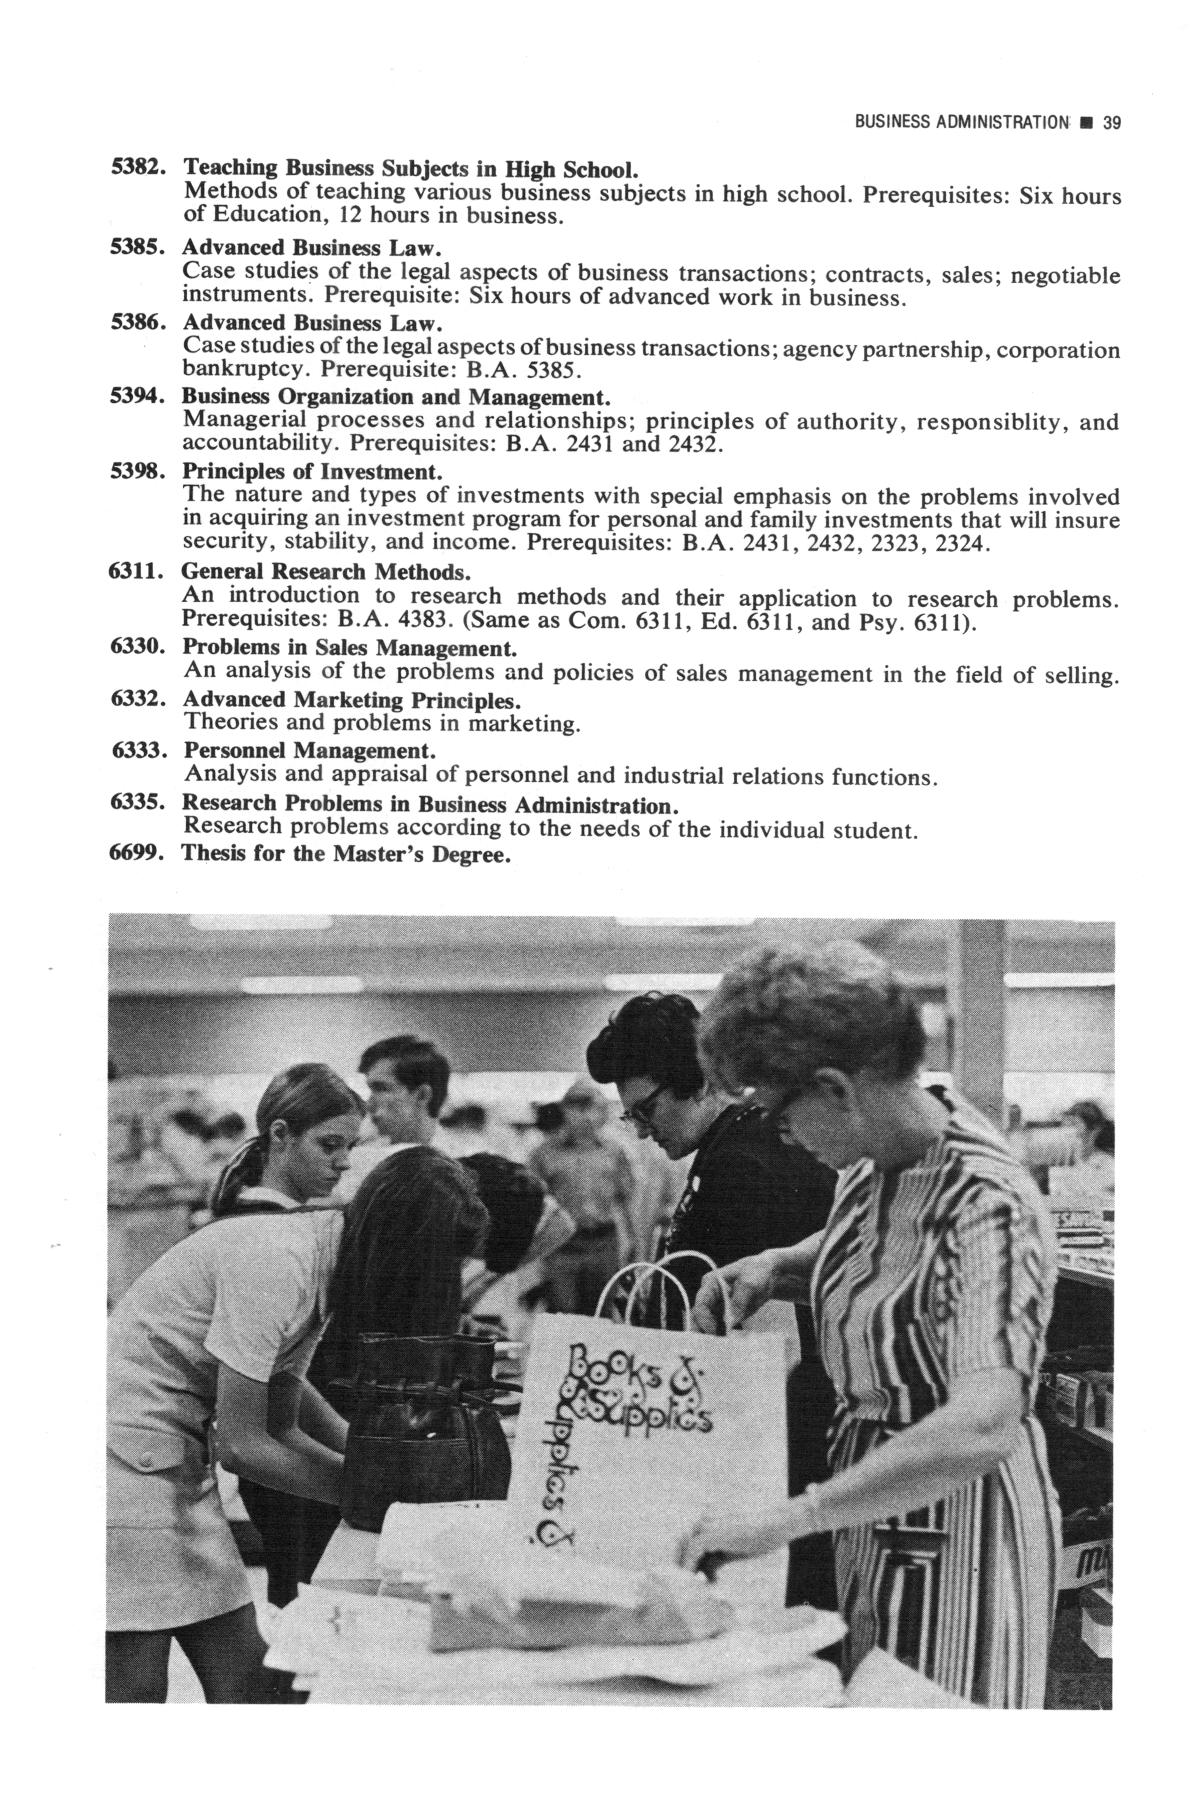 Catalog of Abilene Christian College, 1973-1975
                                                
                                                    39
                                                